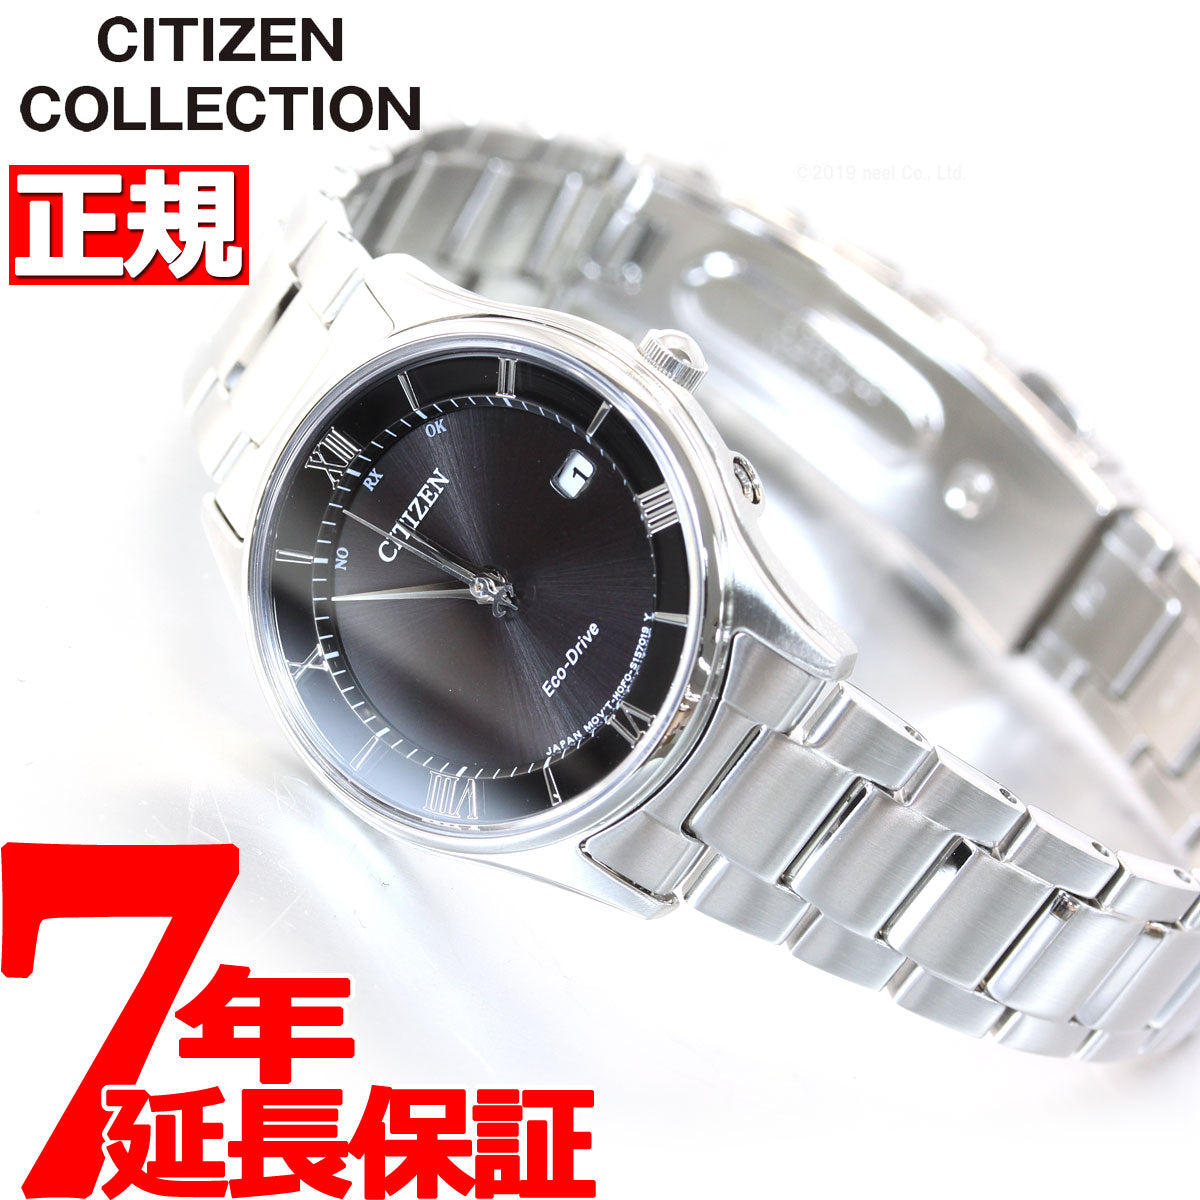 シチズン腕時計ソーラー電波時計 シチズンコレクションレディスES0000-79L レディース腕時計